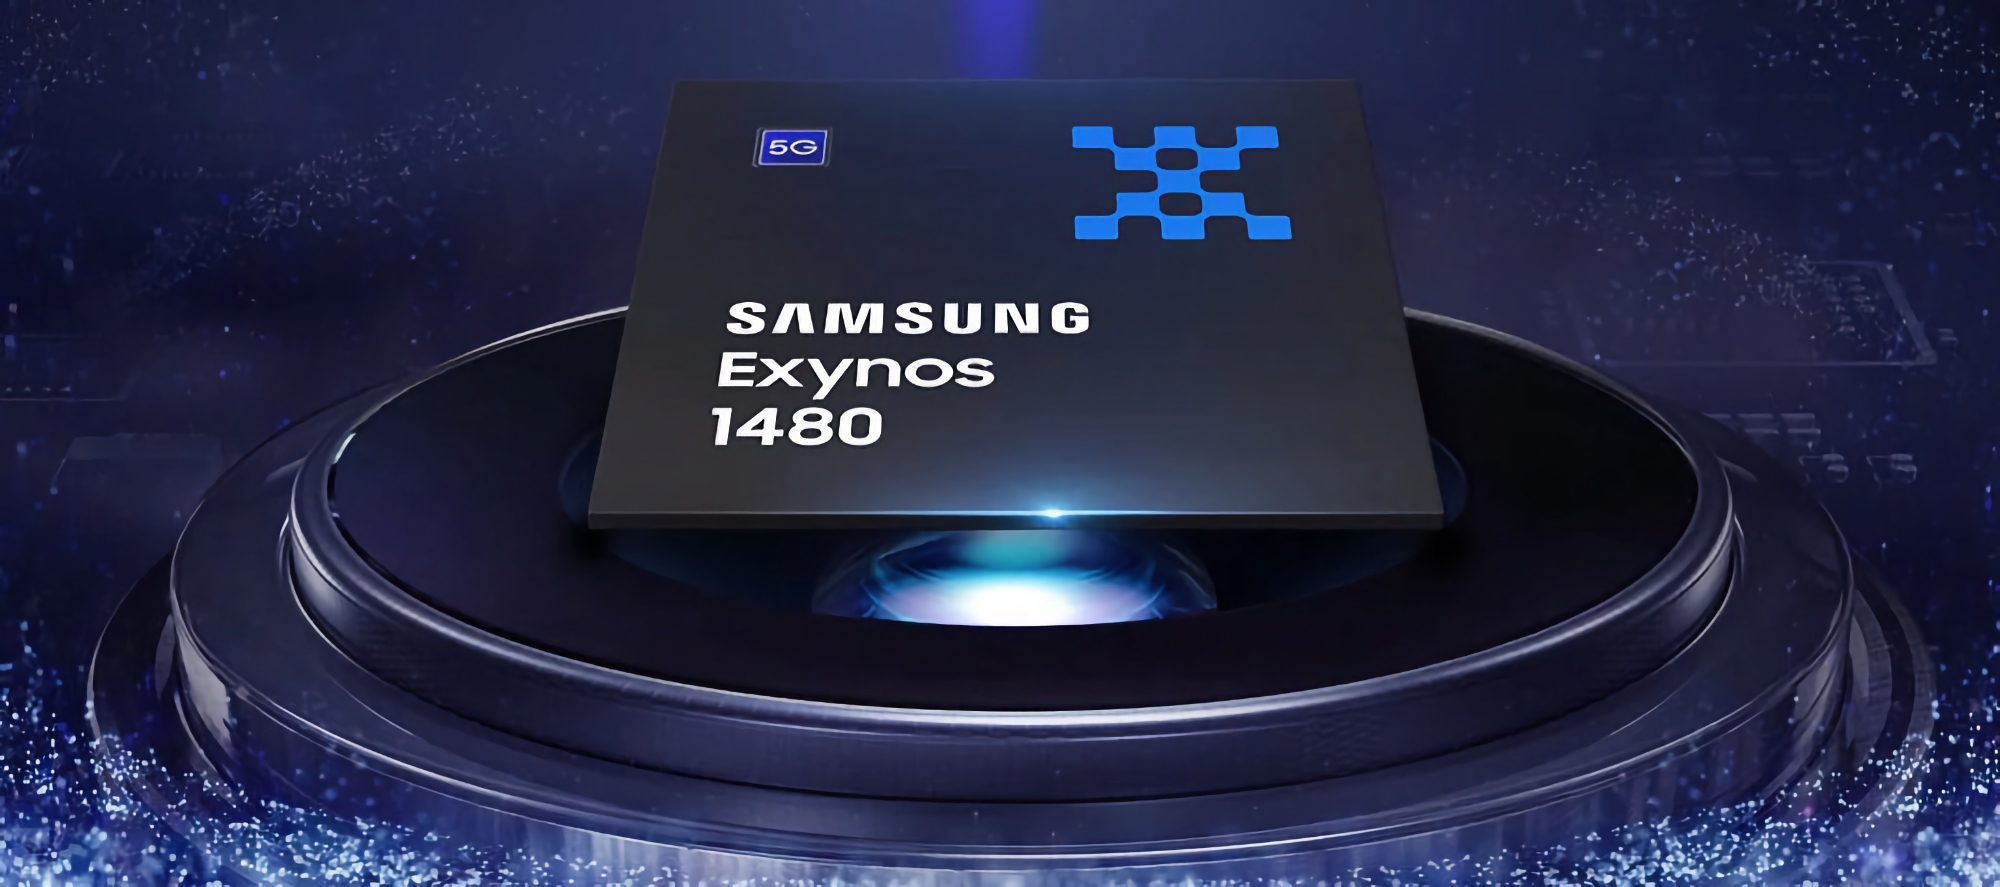 Samsung ha revelado las especificaciones del chip Exynos 1480: ocho núcleos, 4 nanómetros y gráficos Xclipse 530 con arquitectura AMD RDNA 2